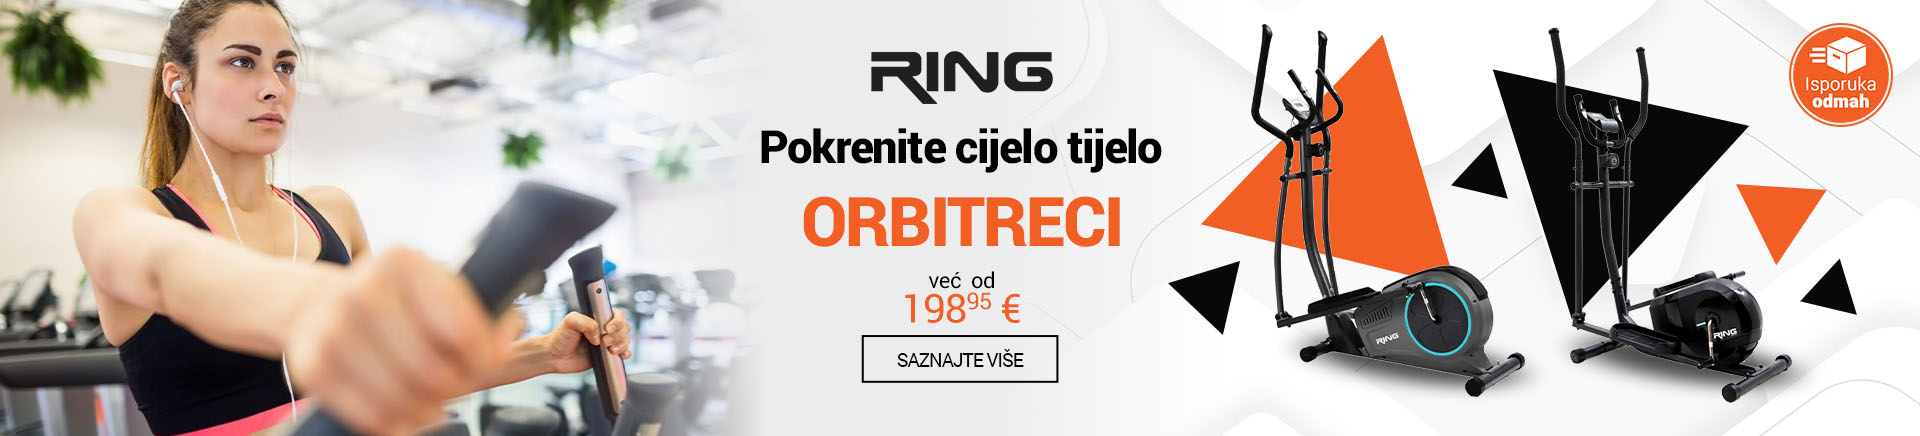 HR RING Orbitreci EUR MOBILE 380 X 436.jpg